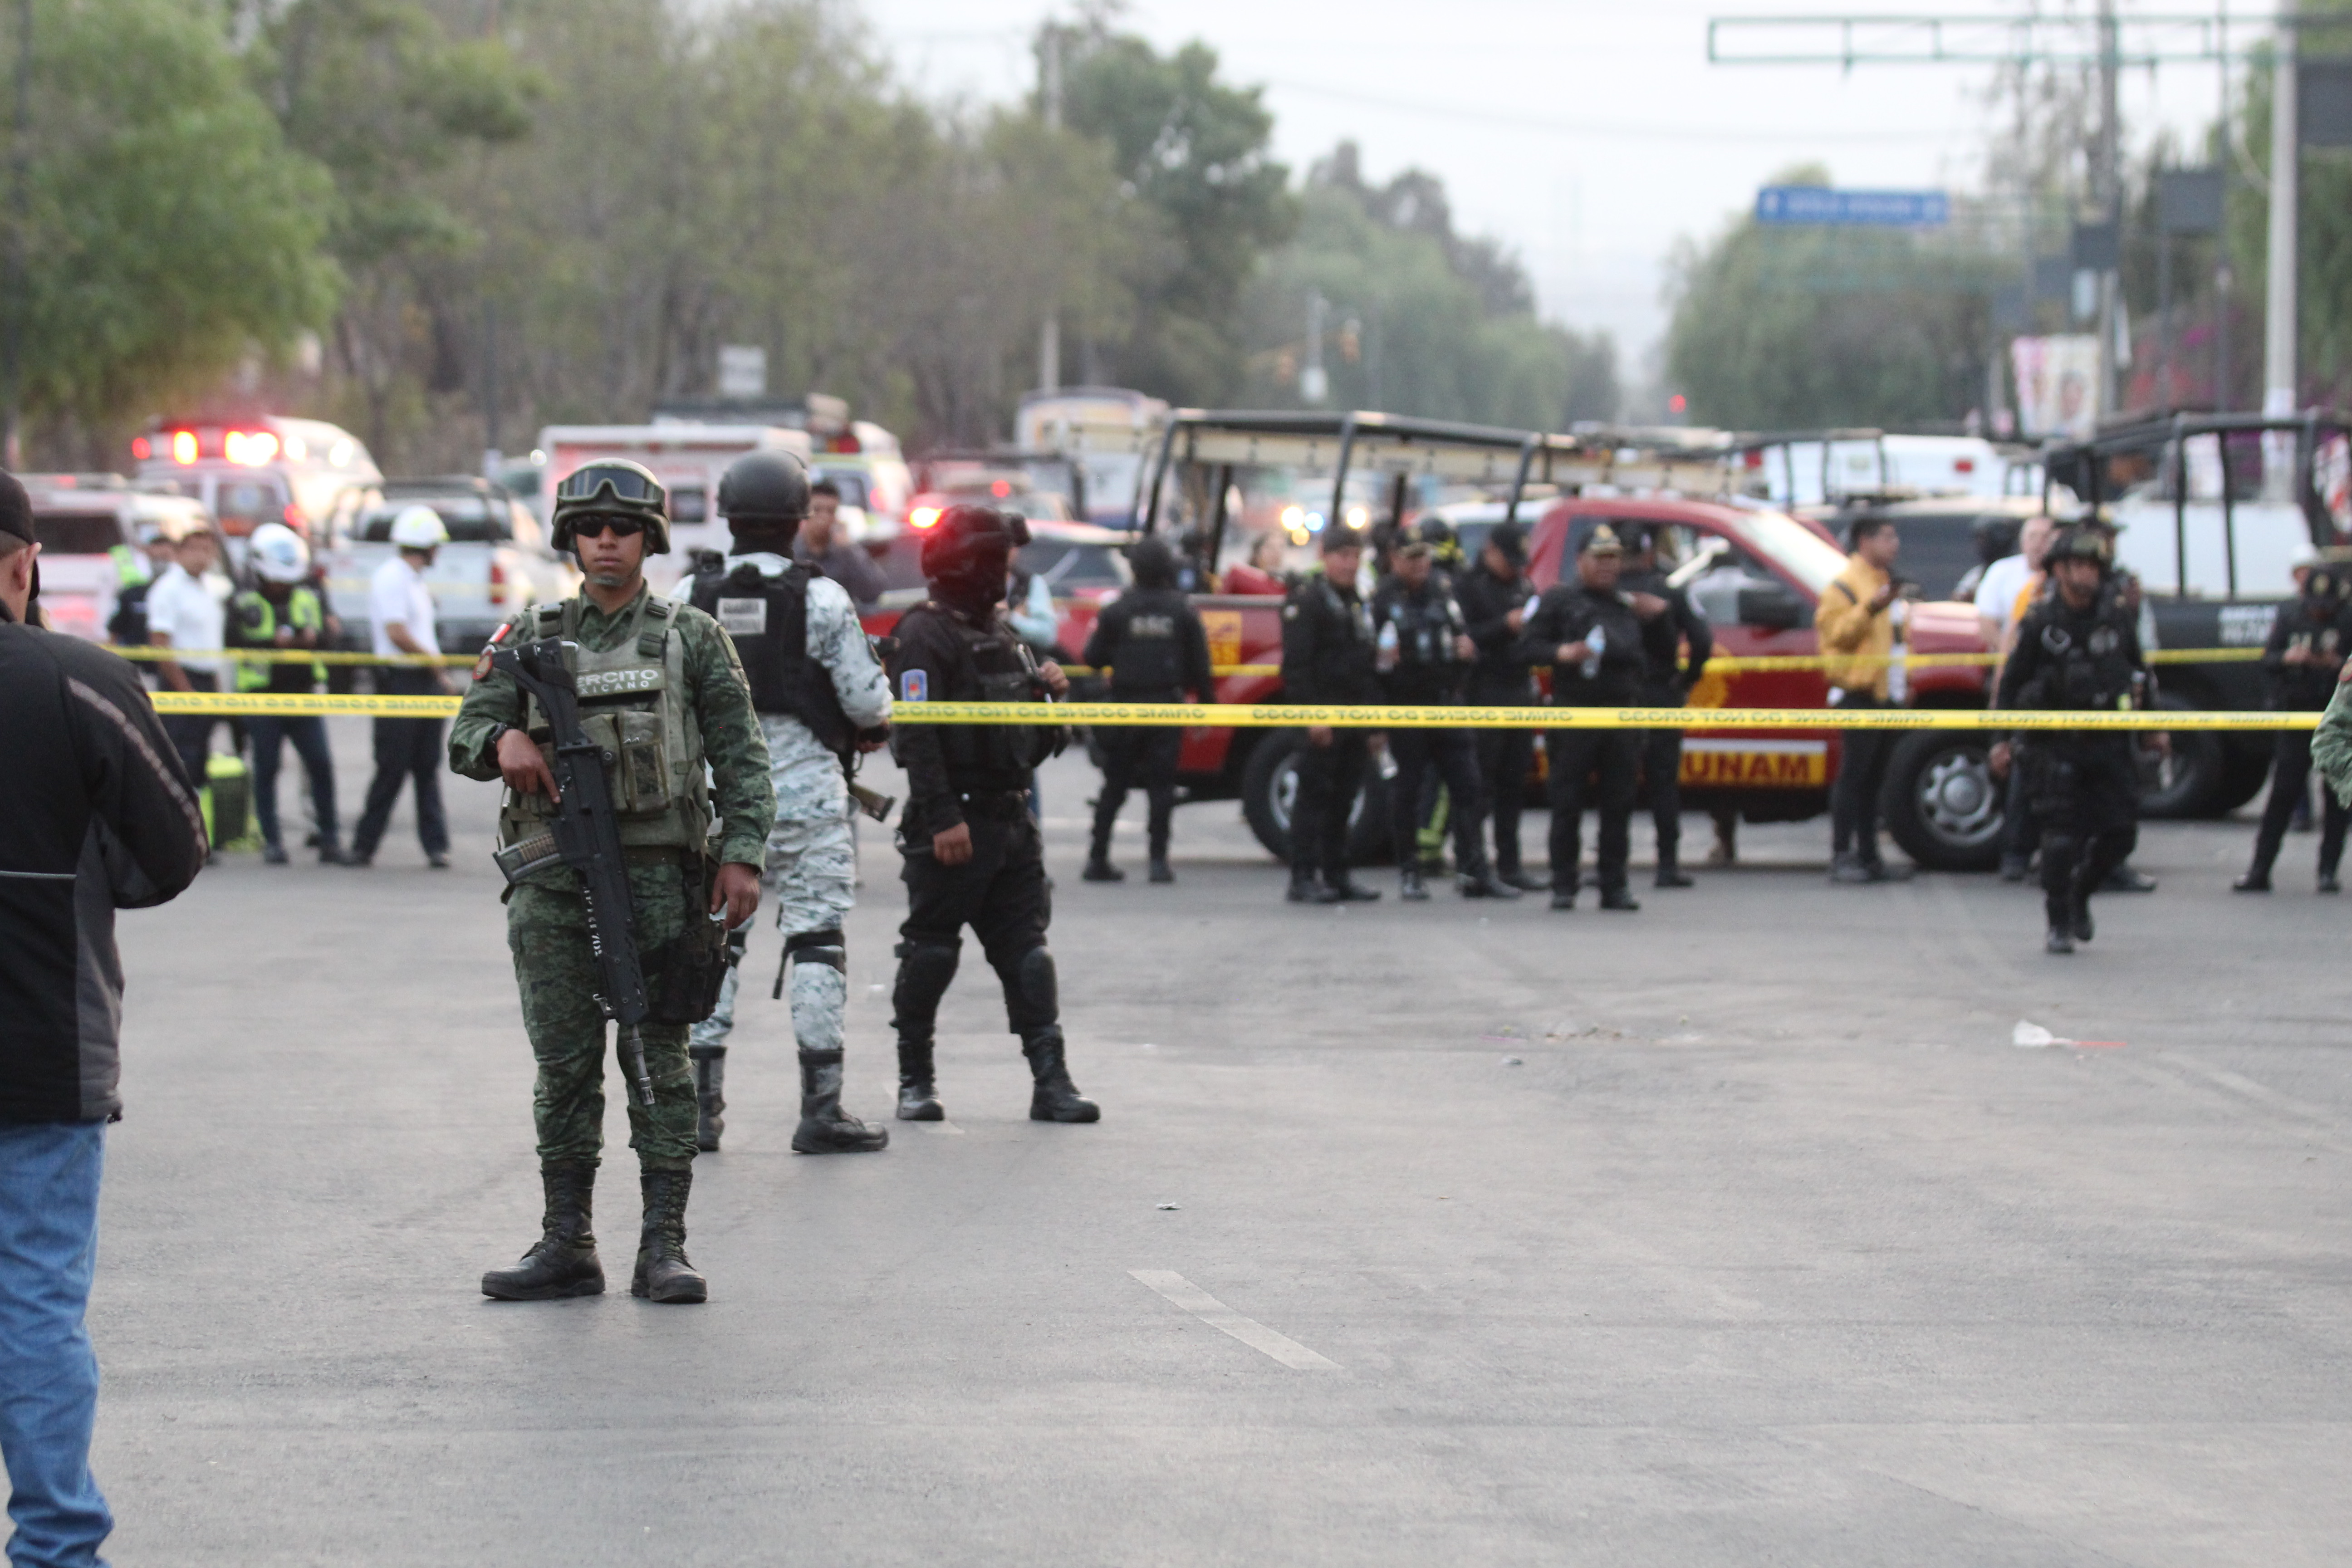 Tres muertos deja desplome de helicóptero privado en Coyoacán. CDMX. ¿Qué pasó?